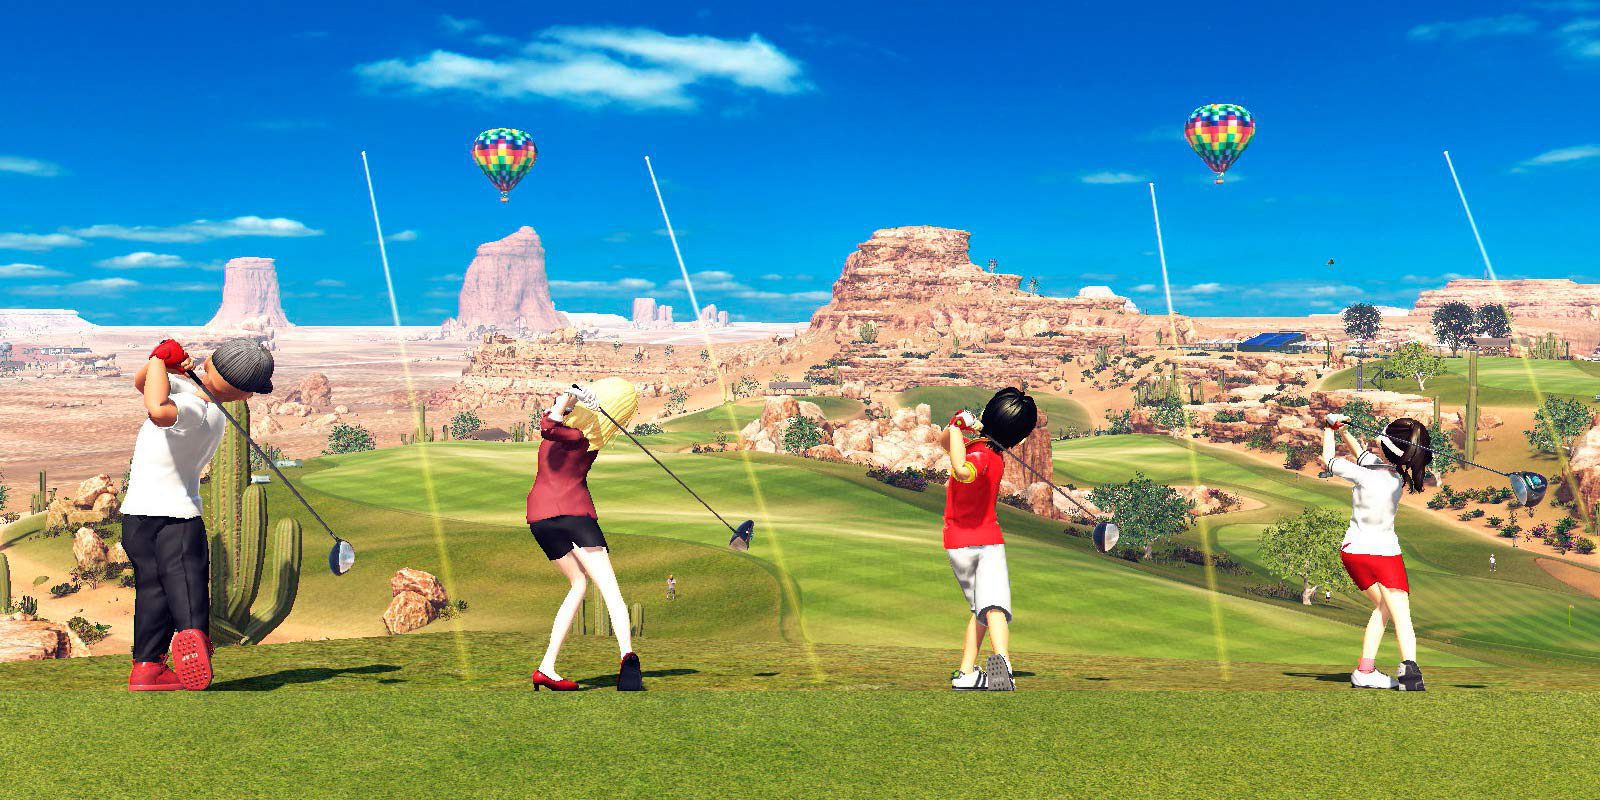 Análisis 'Everybody's Golf' para PS4, jugar al golf puede ser muy divertido